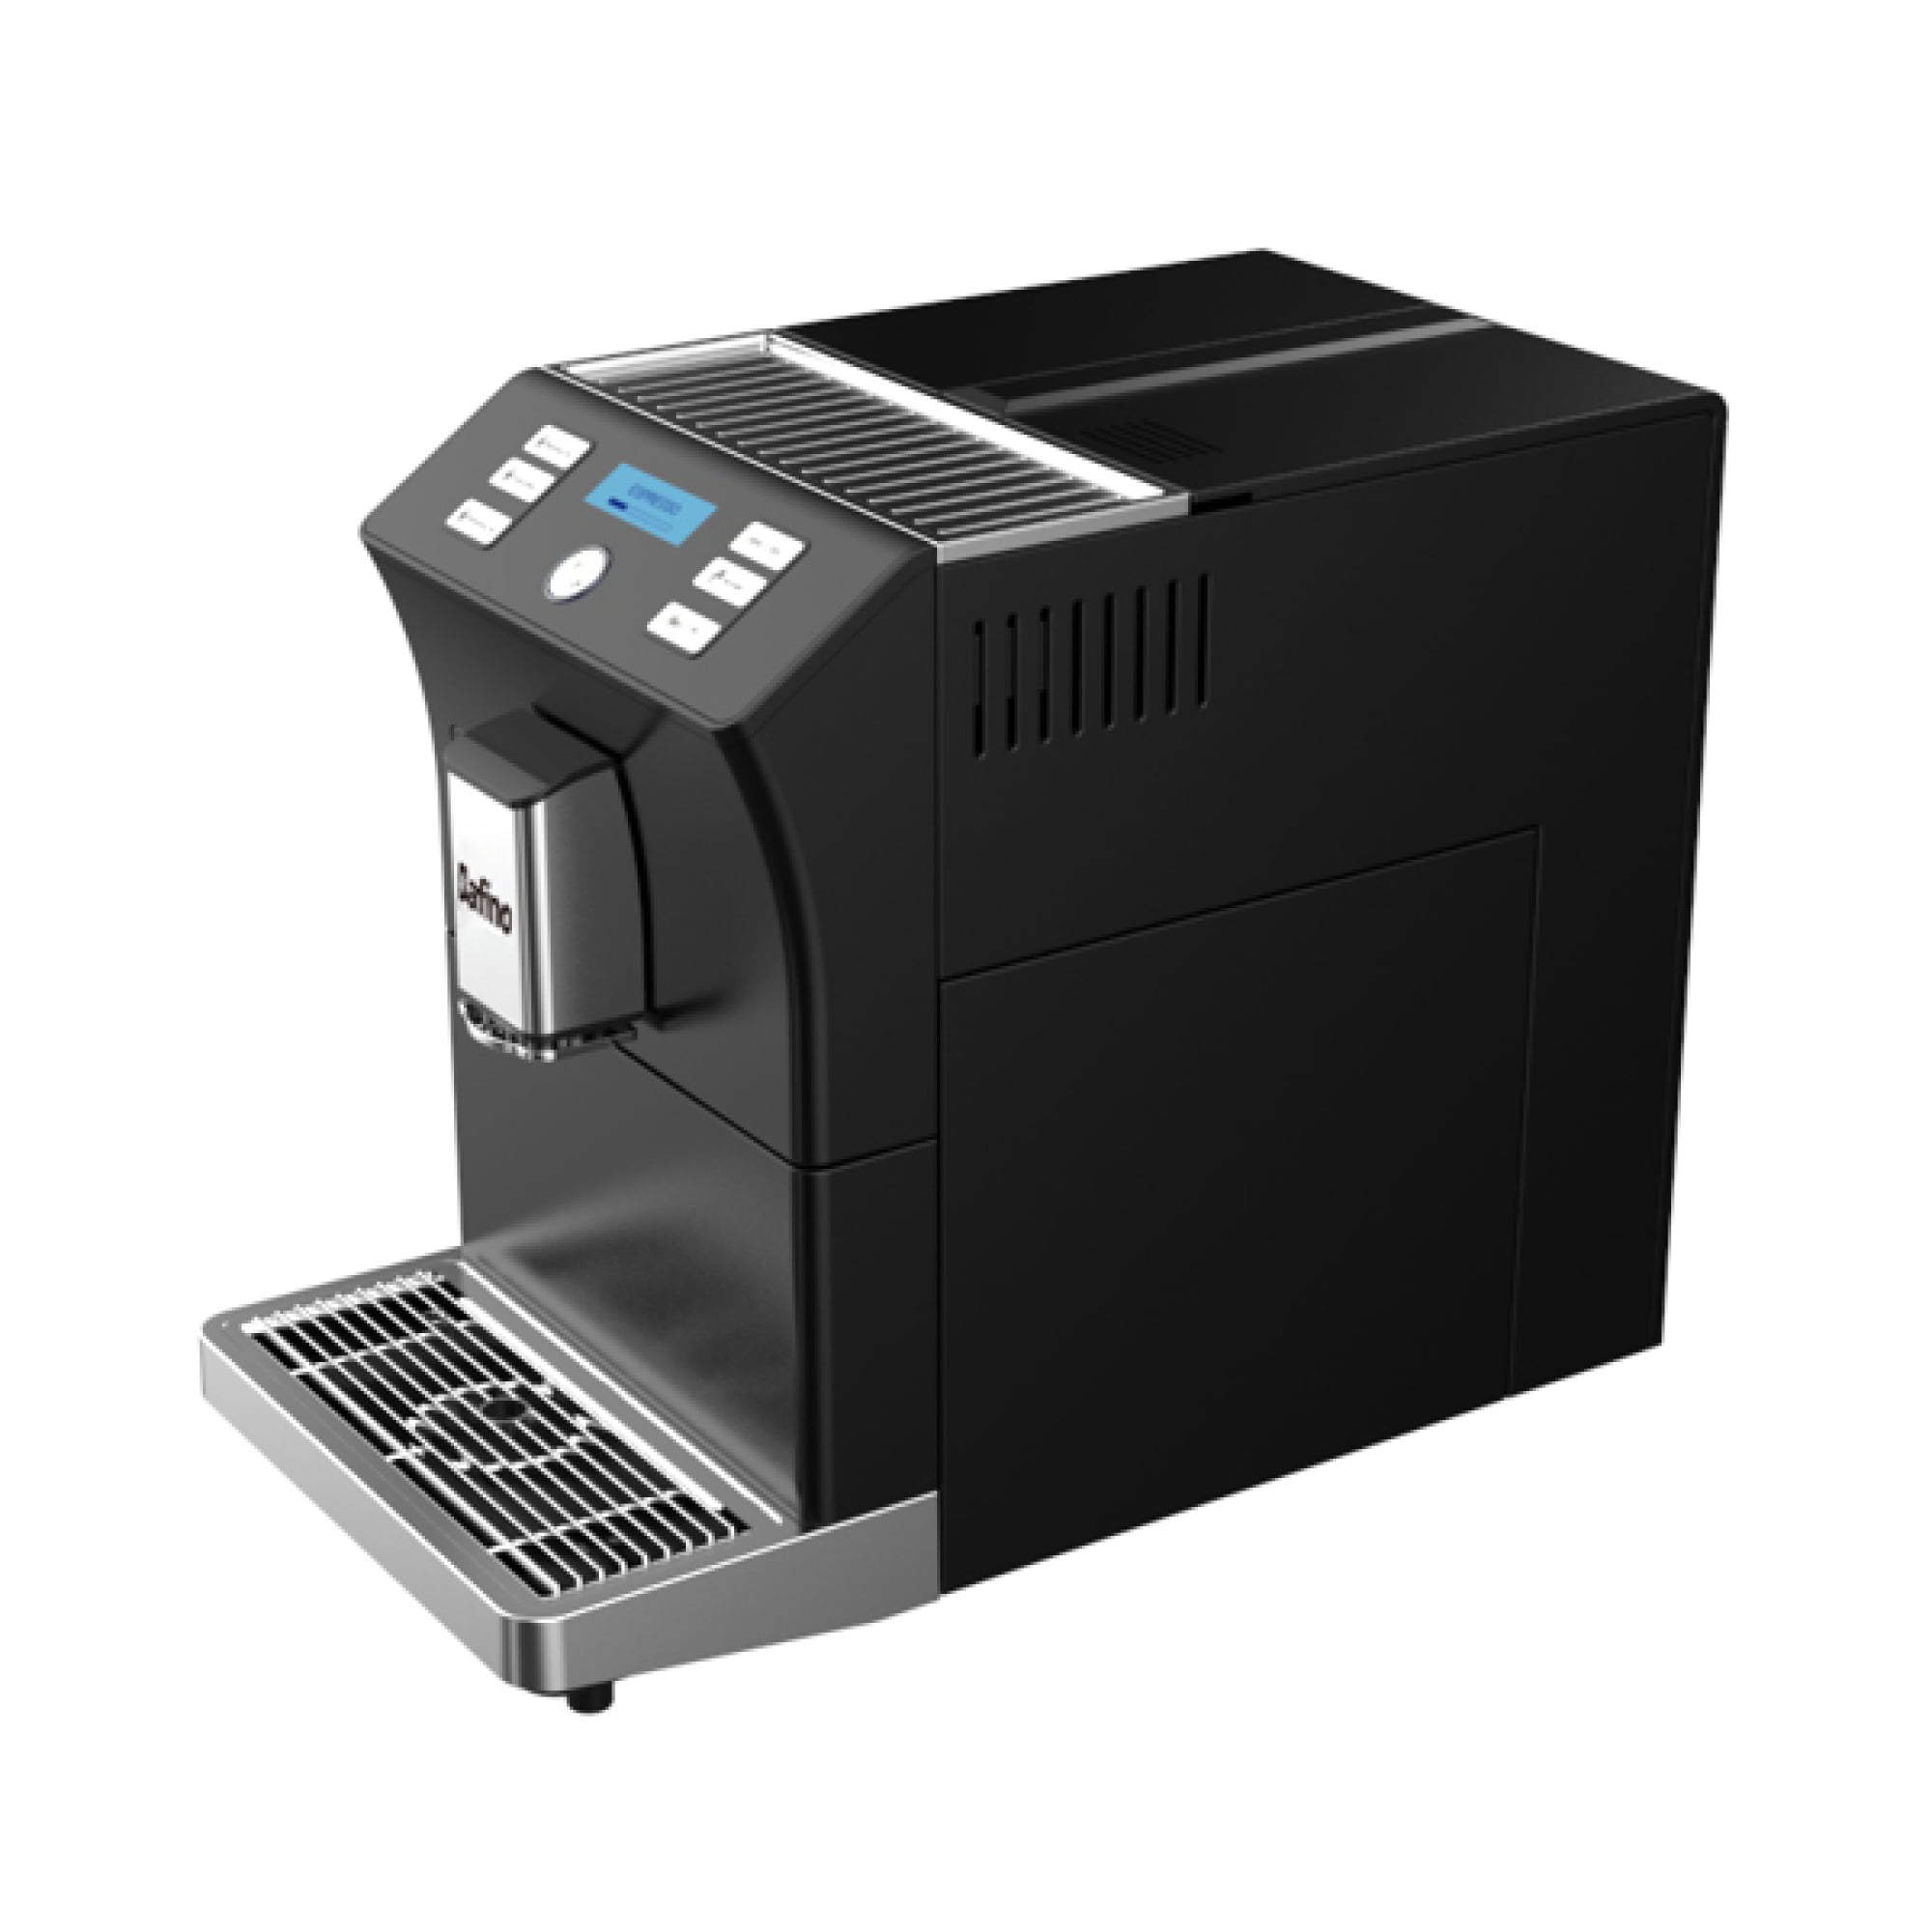 Dafino-206 Fully Automatic Espresso Machine, Black | lupon.gov.ph